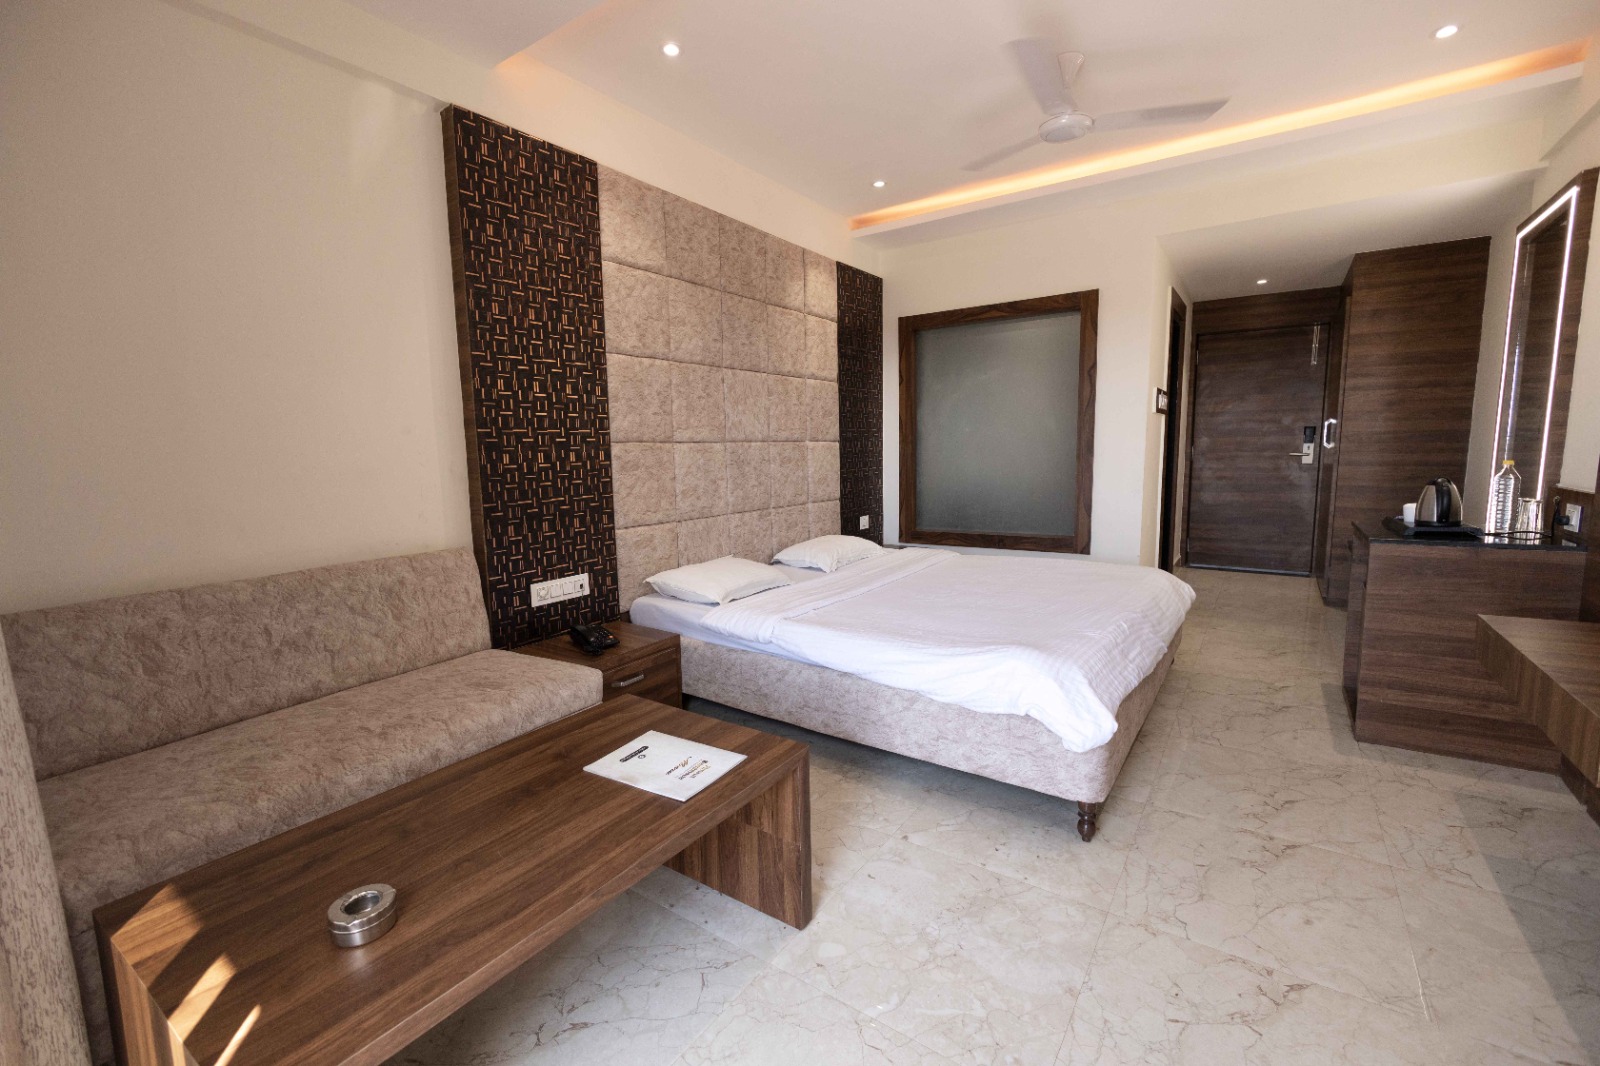 Hotels near mahakal temple in ujjain - bar area